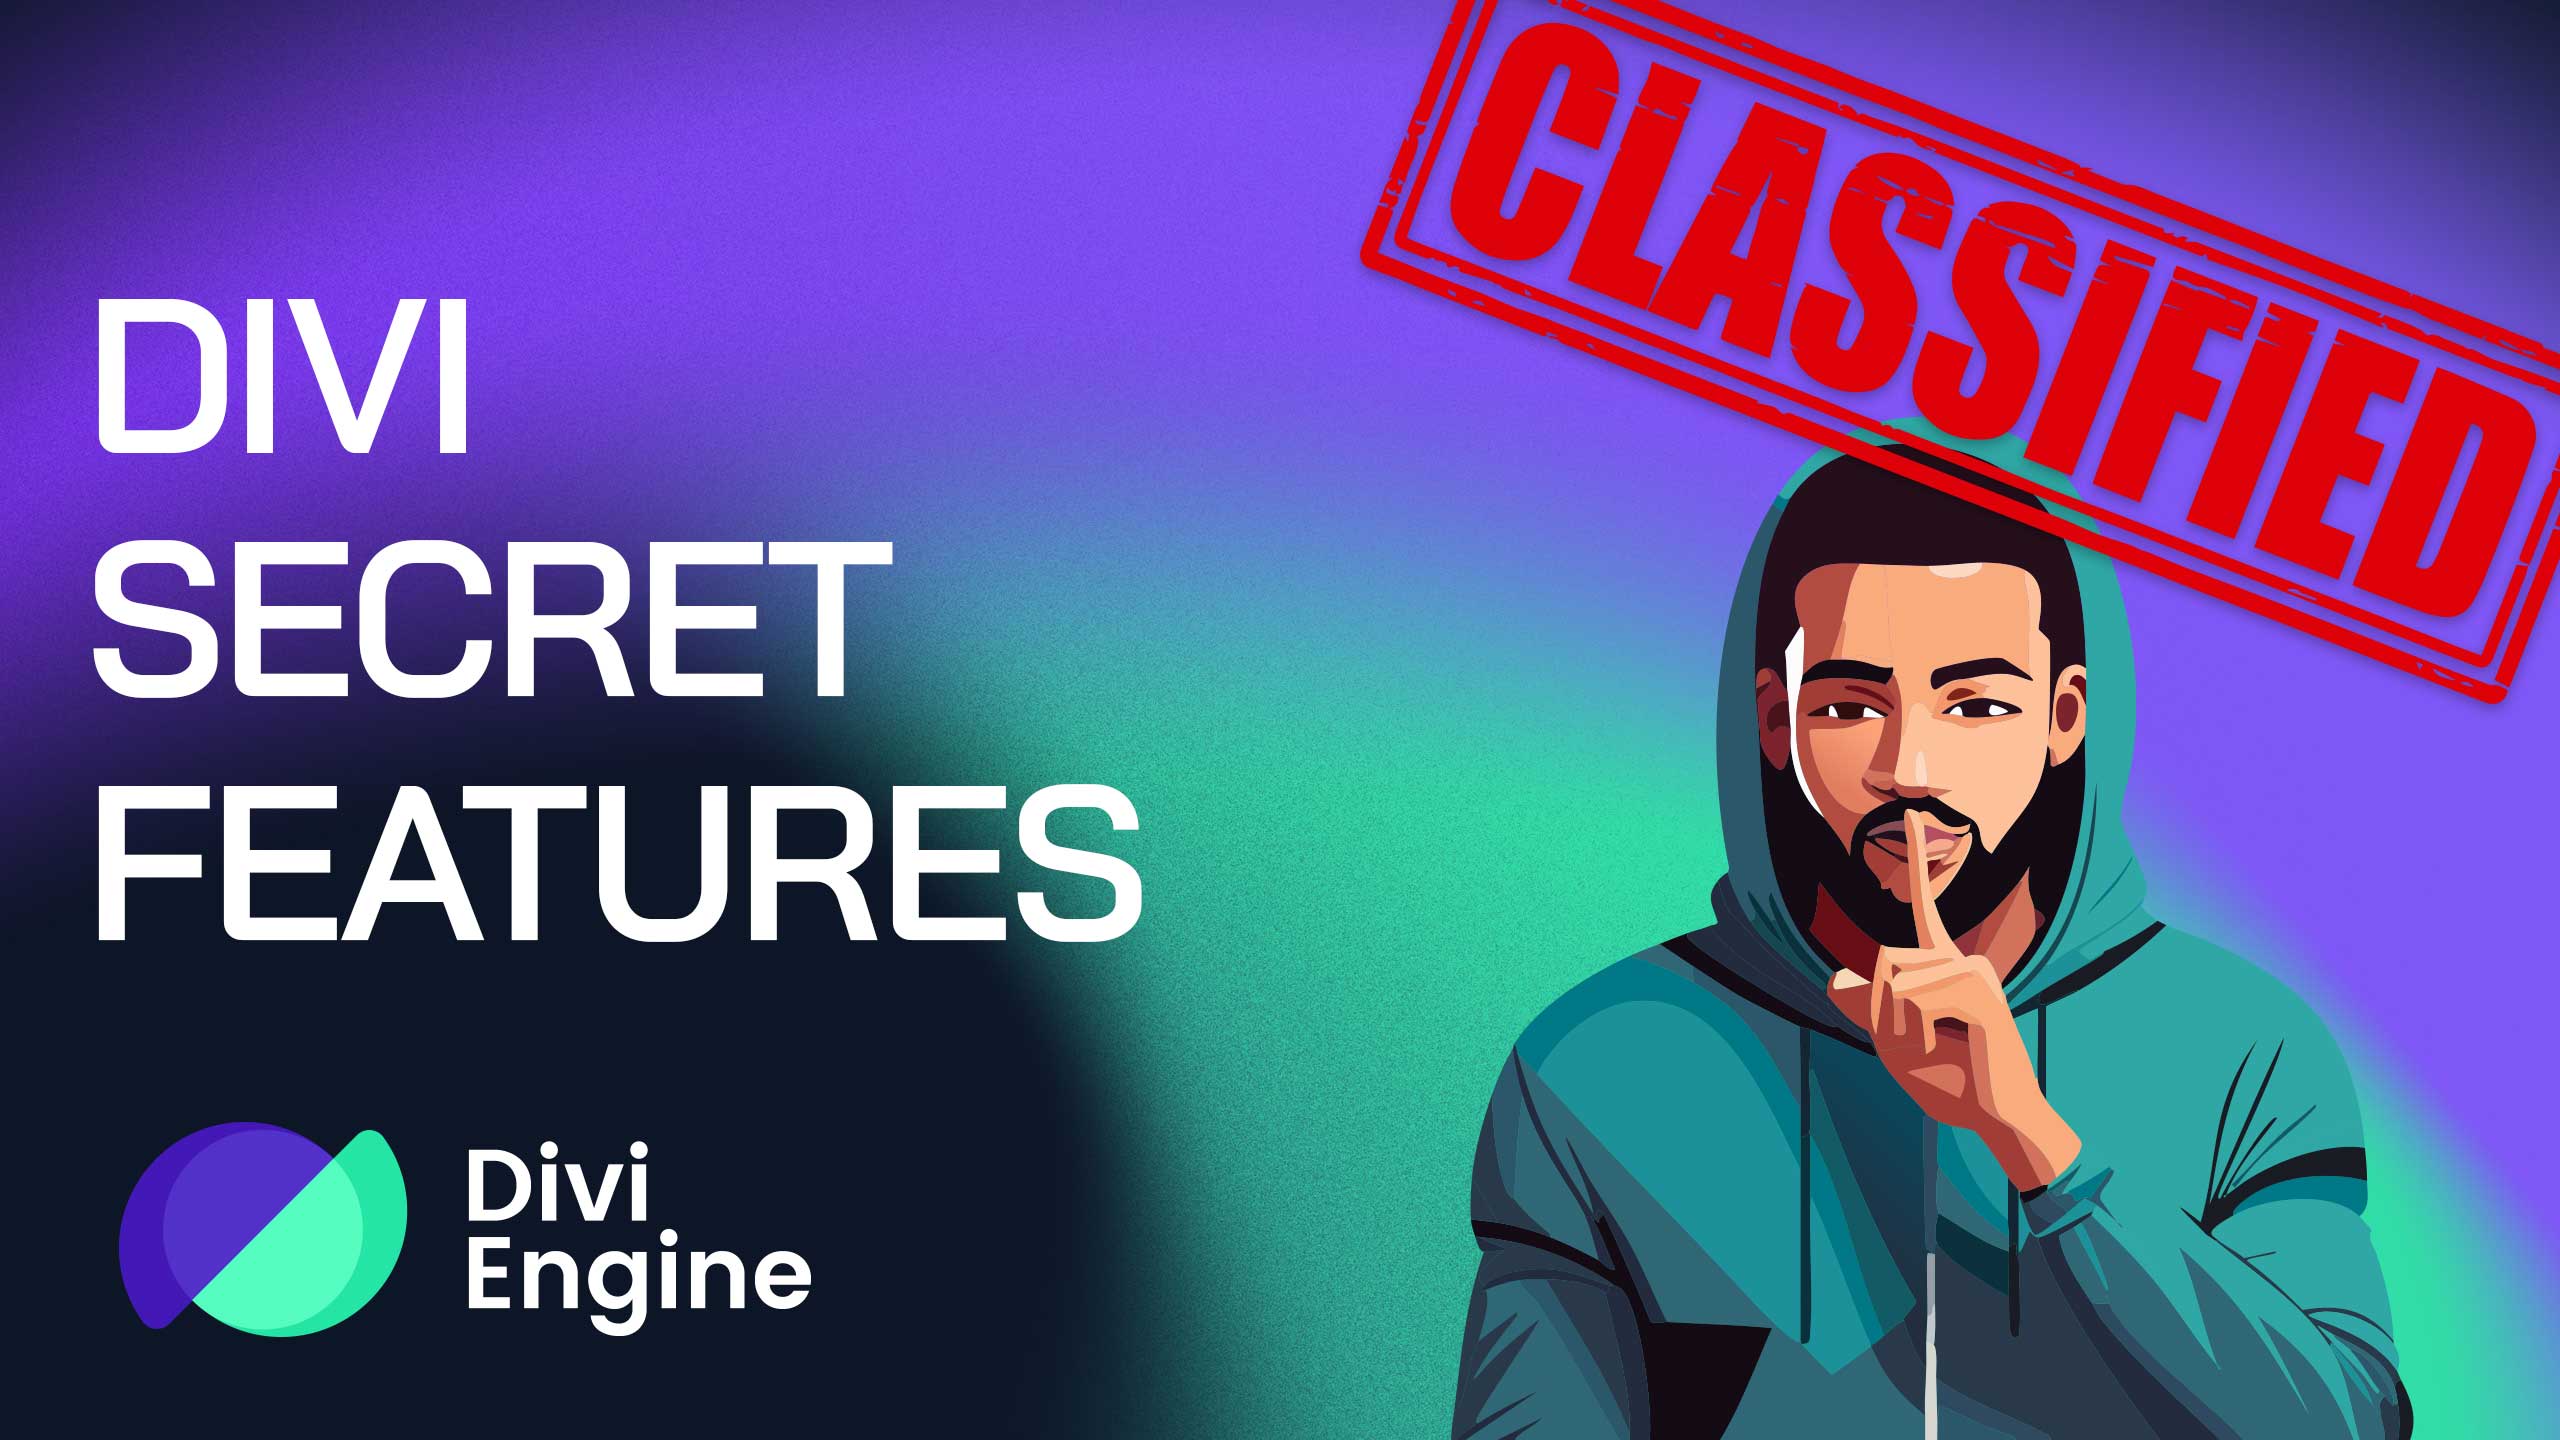 Announcing the Divi Secret Features Series – Divi tutorials on some lesser known Divi features